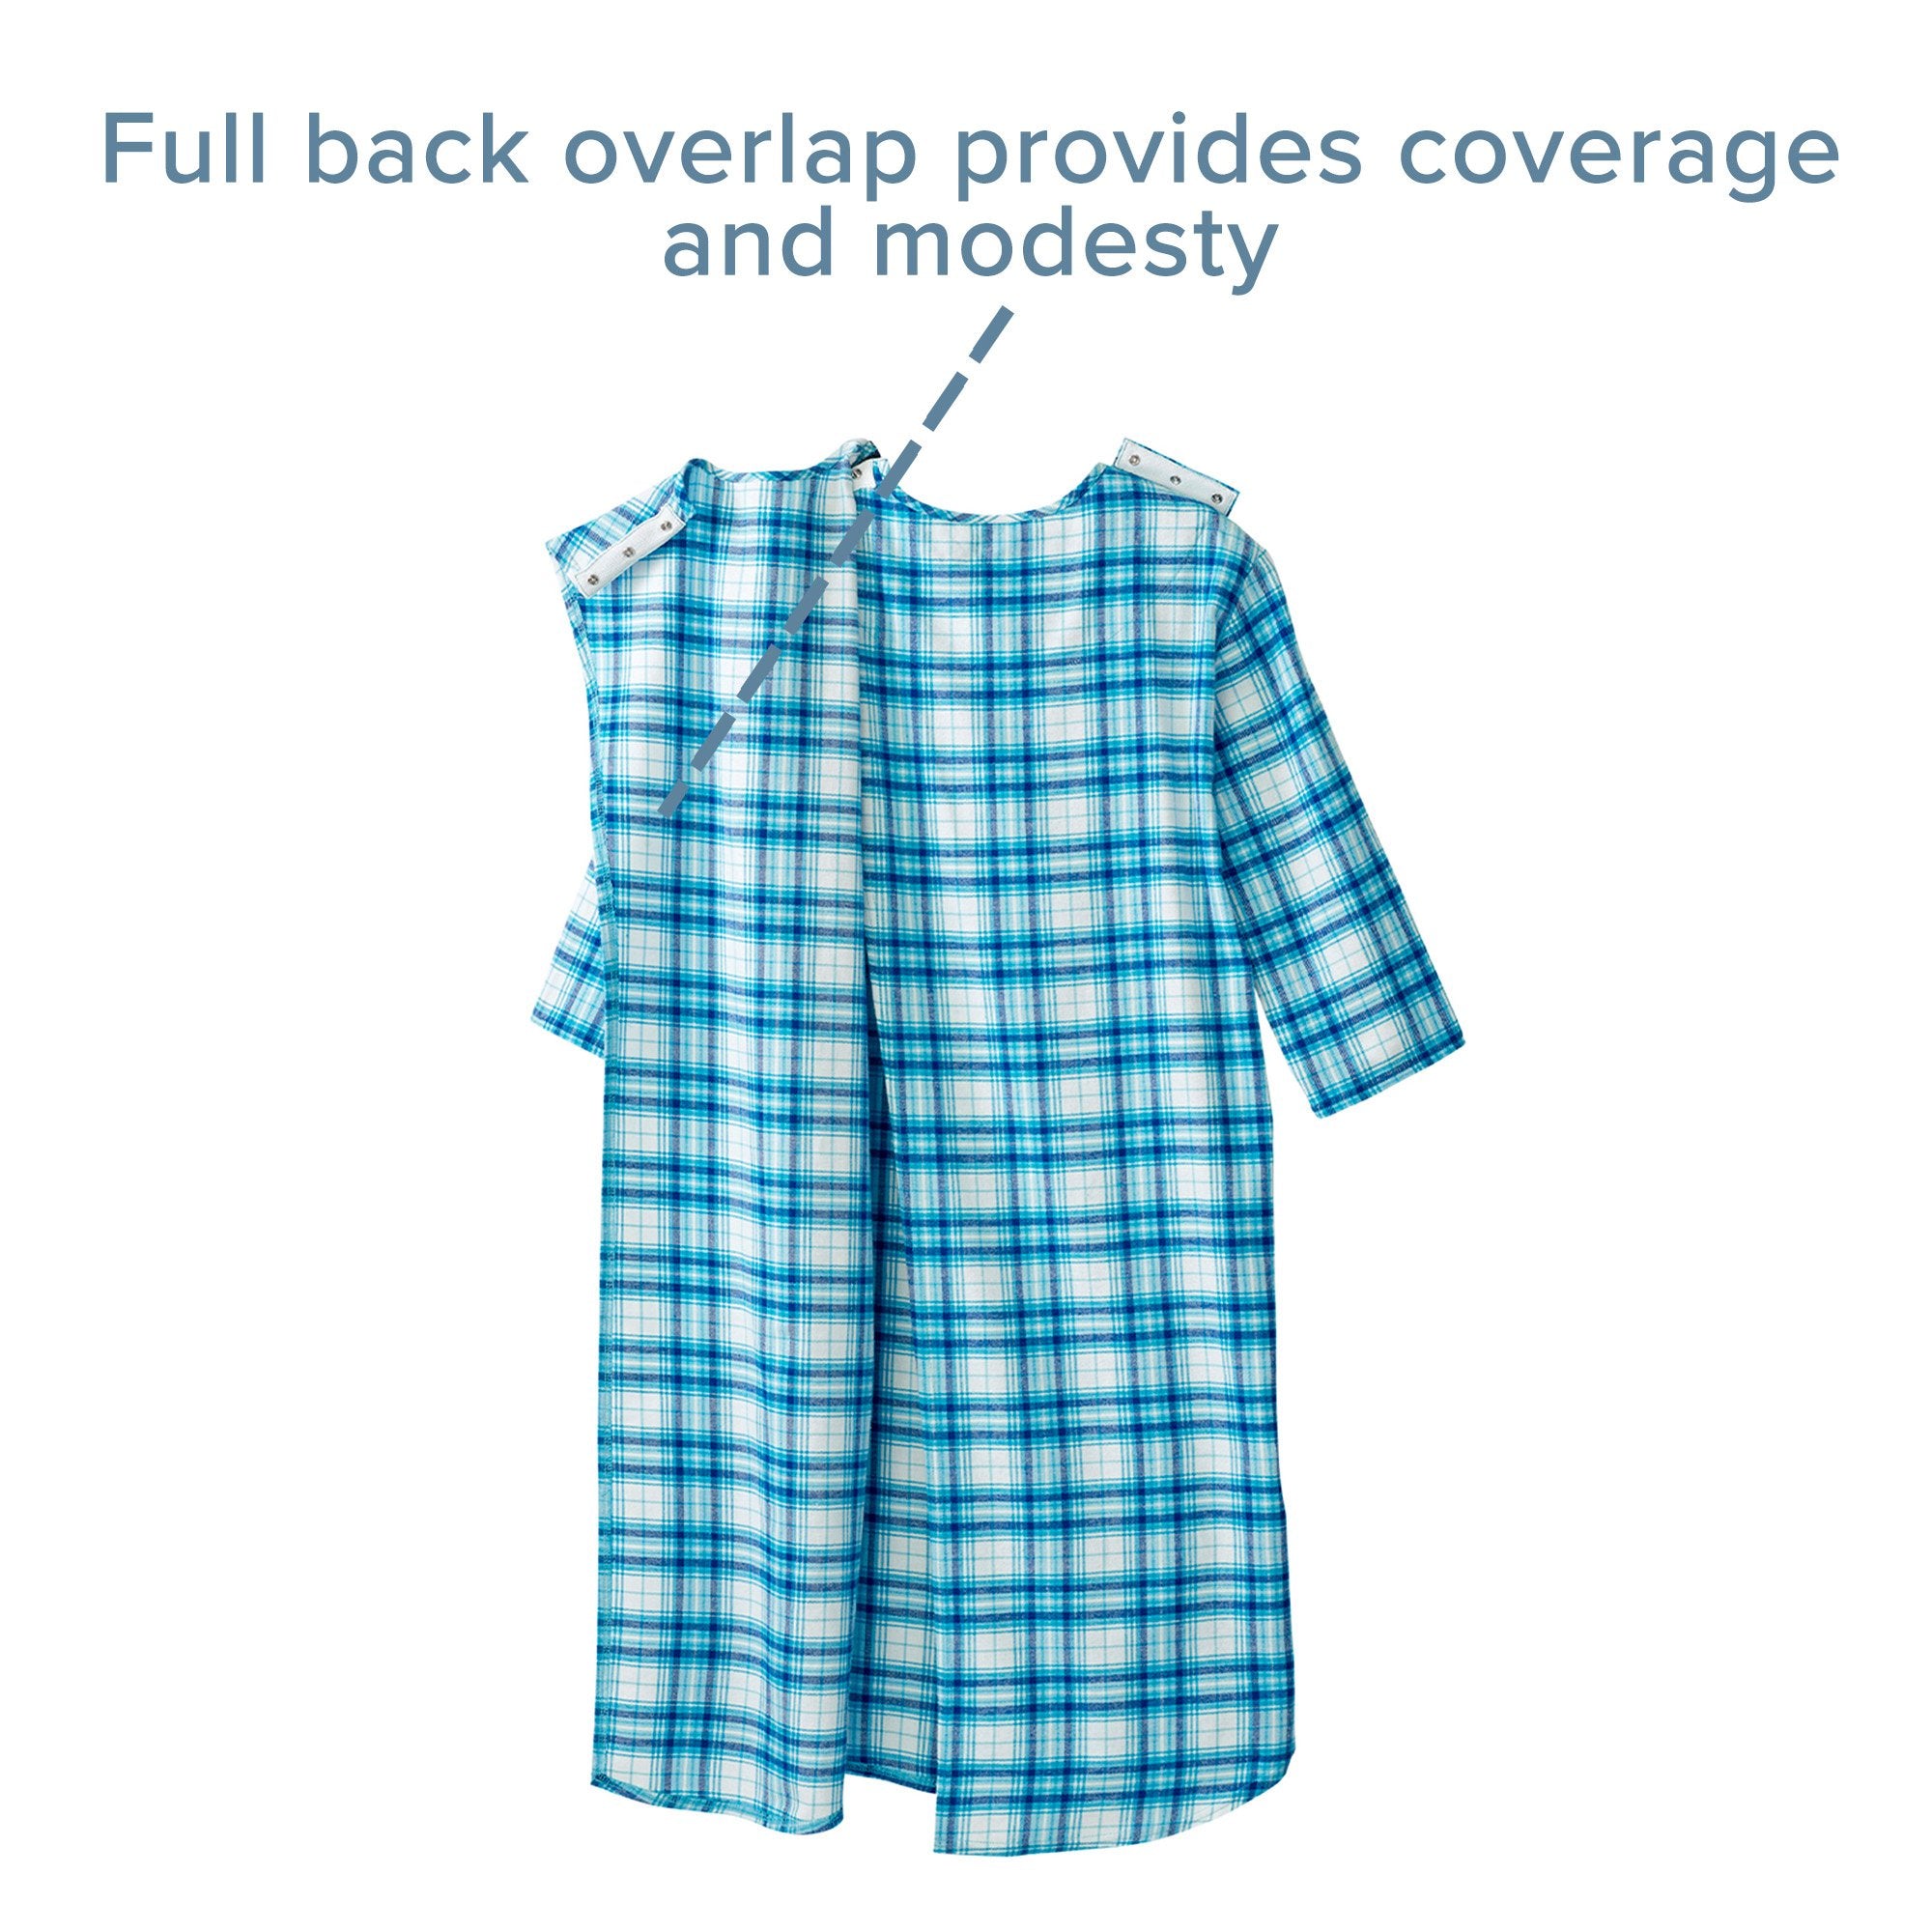 Silverts® Shoulder Snap Patient Exam Gown, X-Large, Turquoise Plaid (1 Unit)